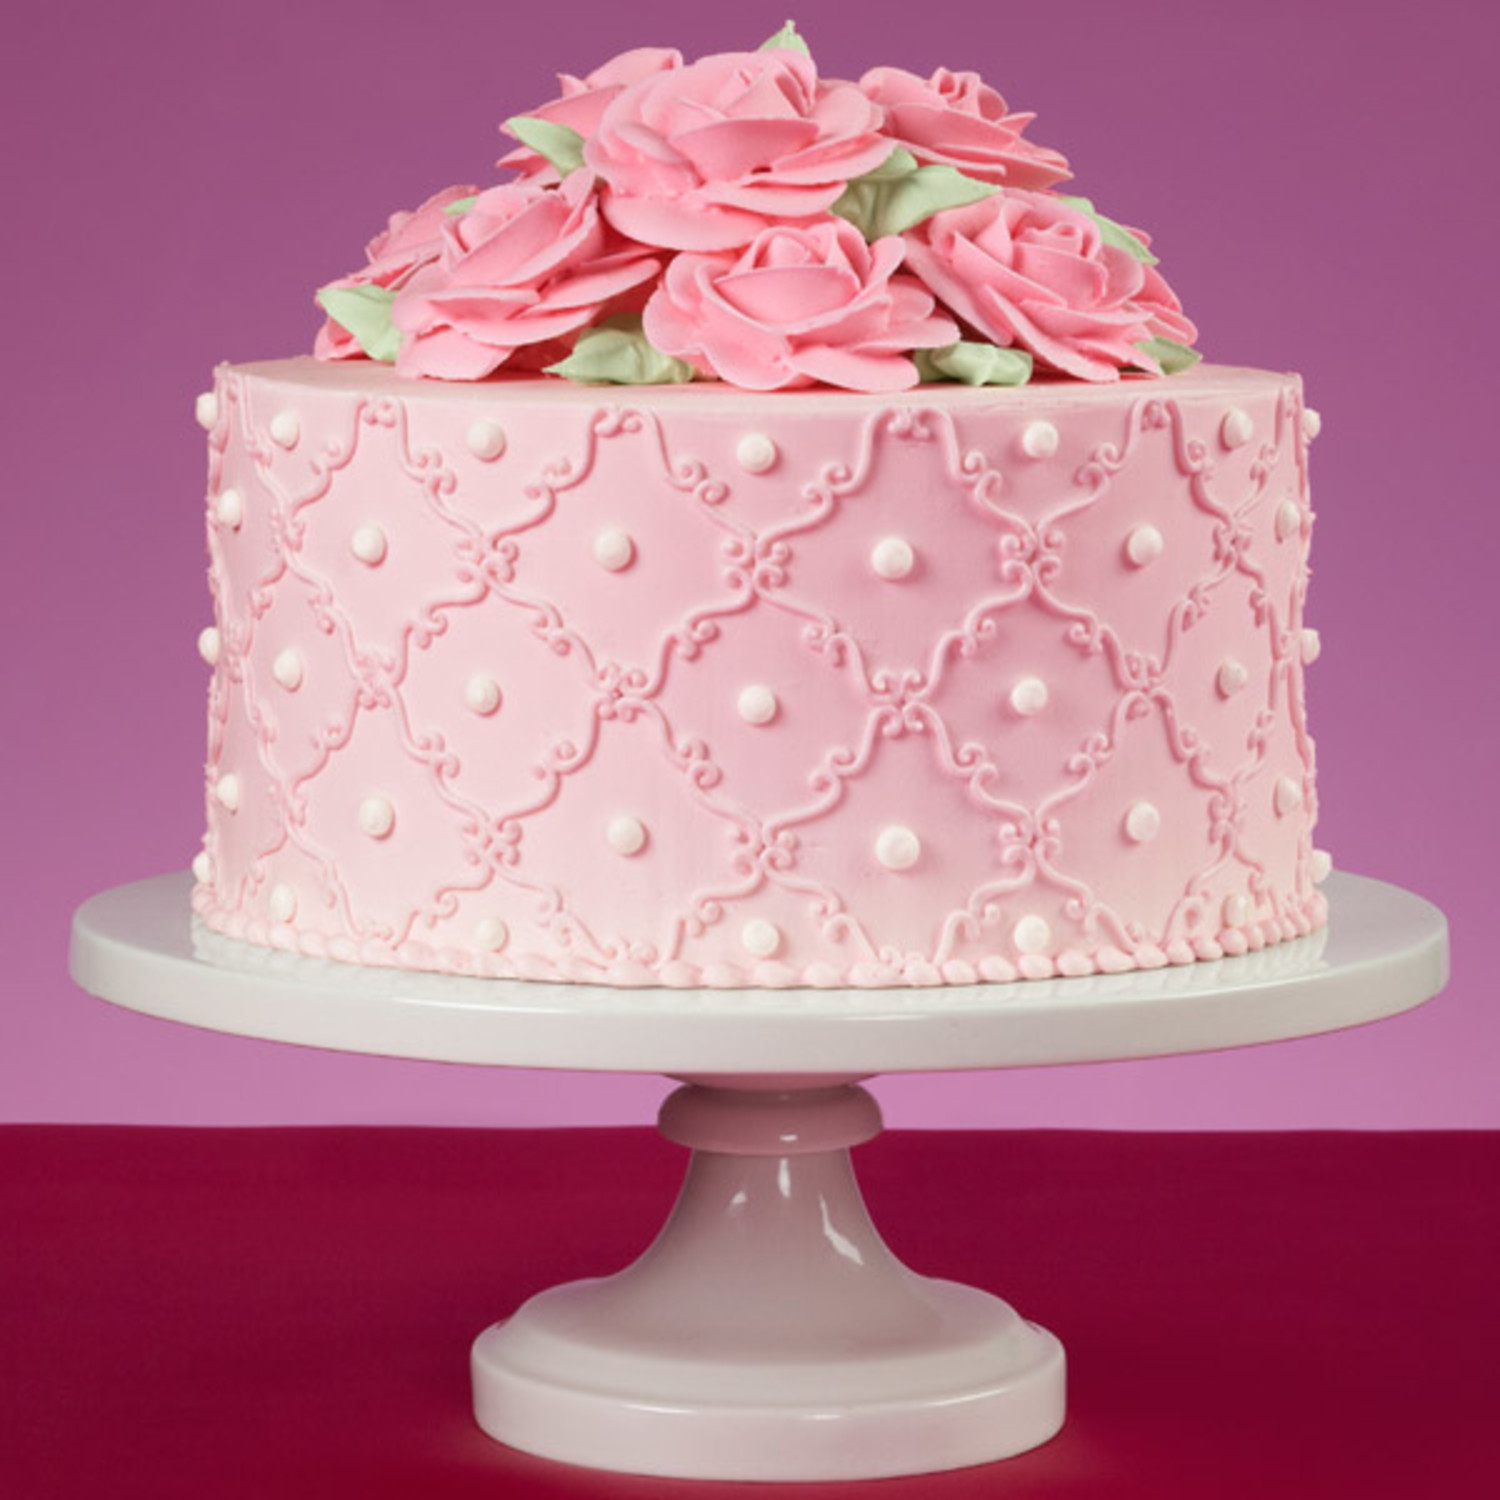 So Sweet Pink Roses Cake